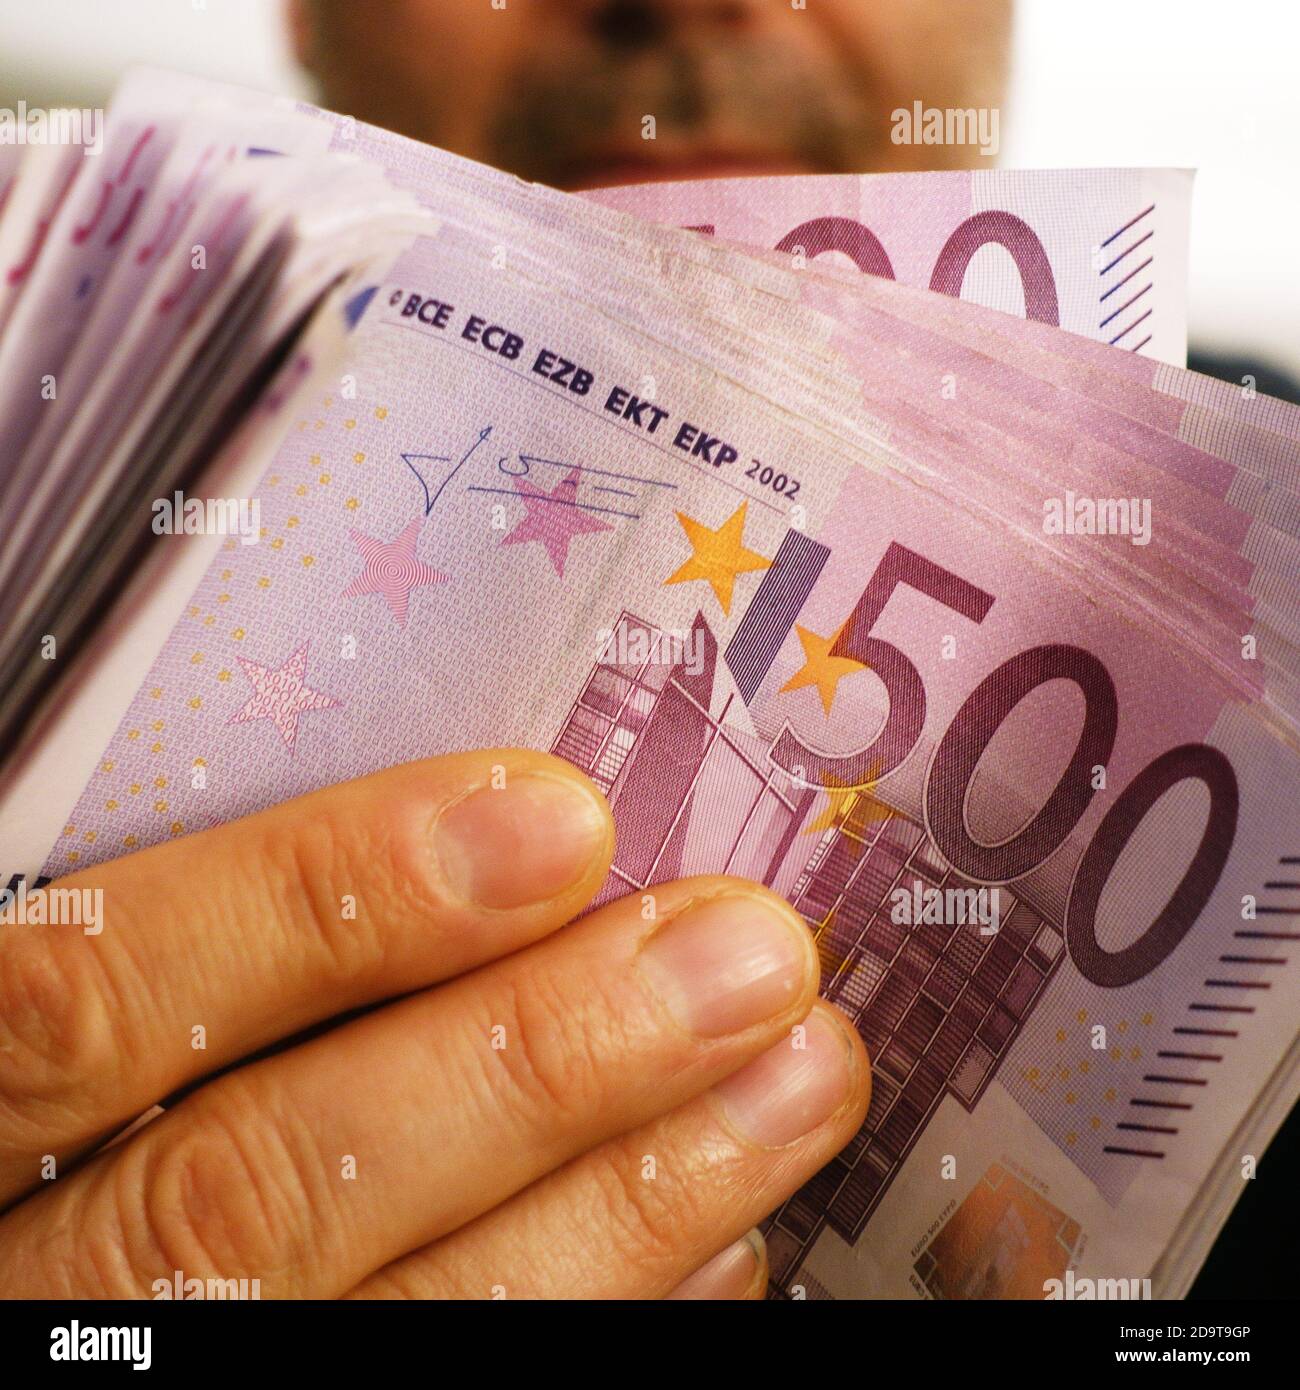 a rich man shows 10,000 euros in 500 euro notes Stock Photo